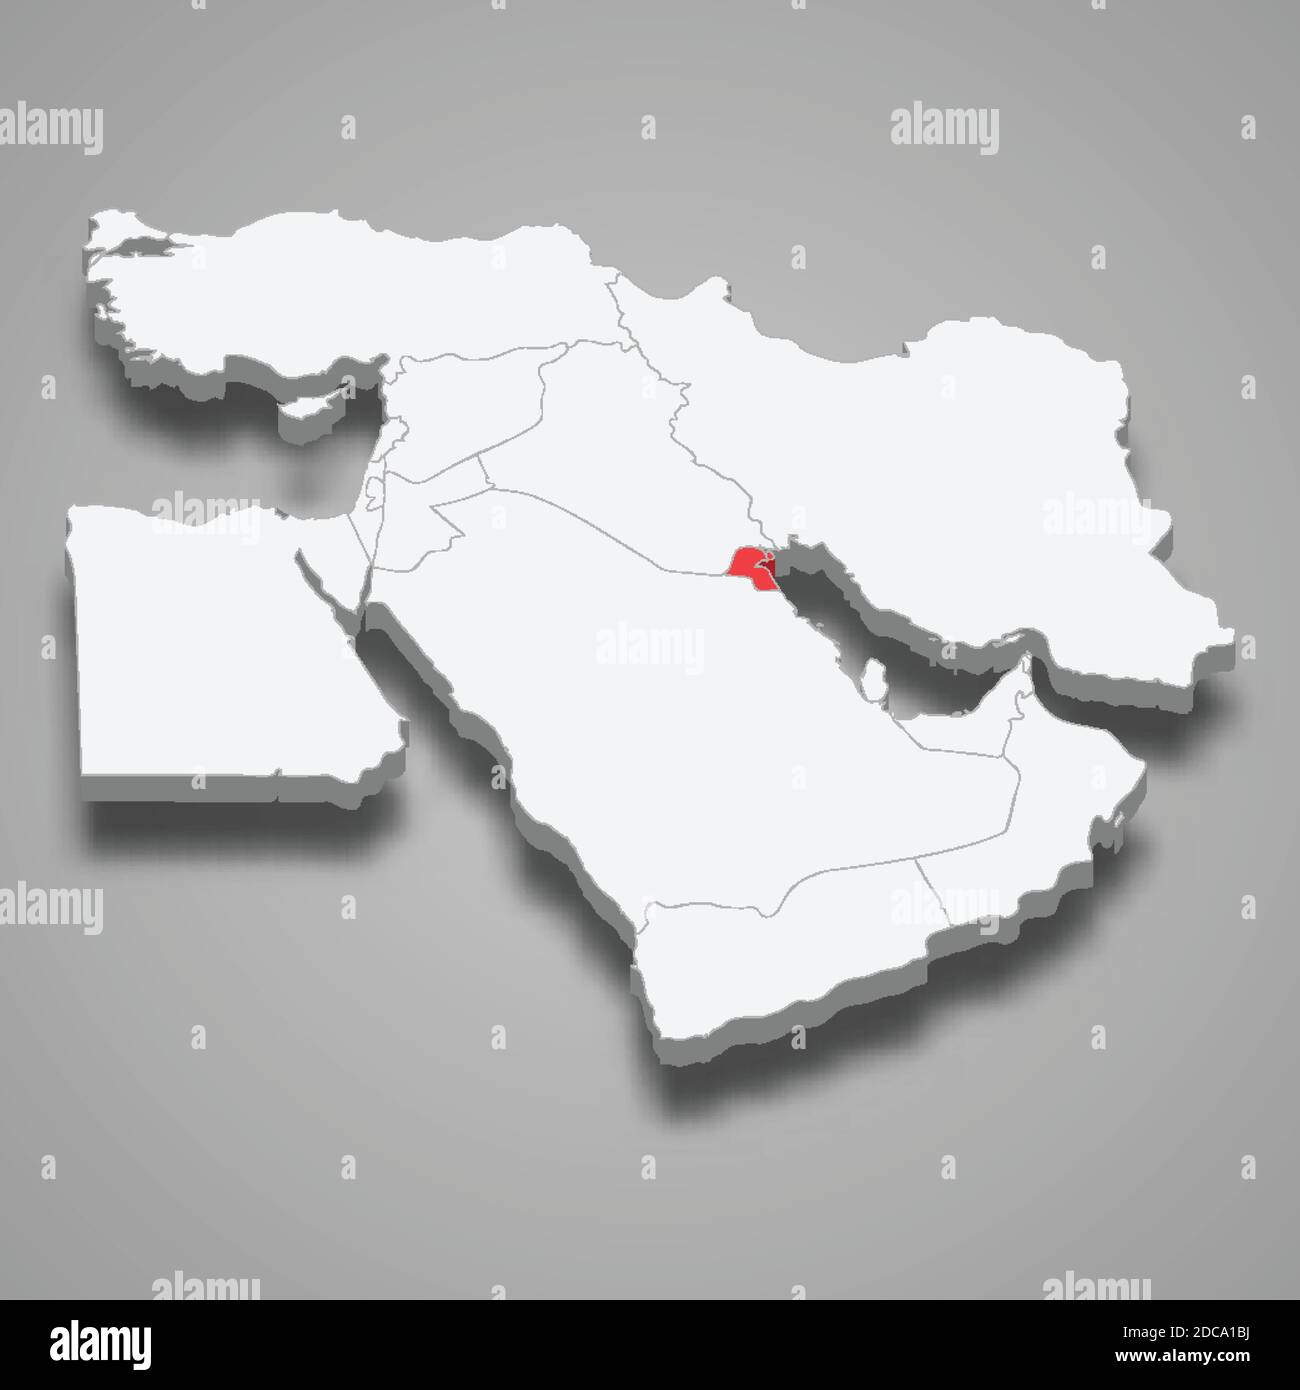 Paese Kuwait all'interno della mappa isometrica 3d del Medio Oriente Illustrazione Vettoriale